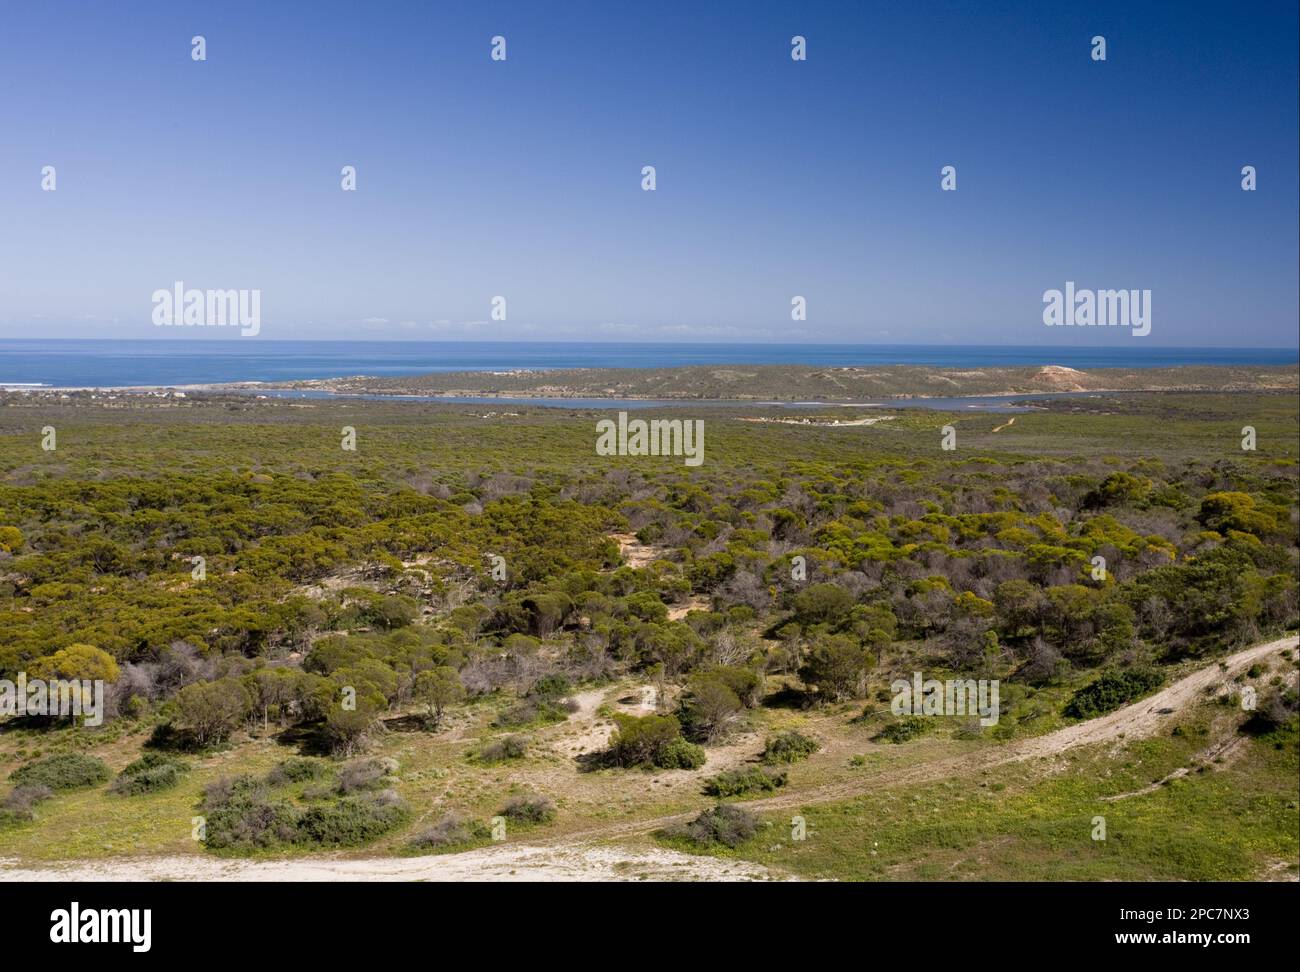 Vista dell'habitat costiero semi-desertico e del mare, Kalbarri N. P. Australia Occidentale, Australia Foto Stock